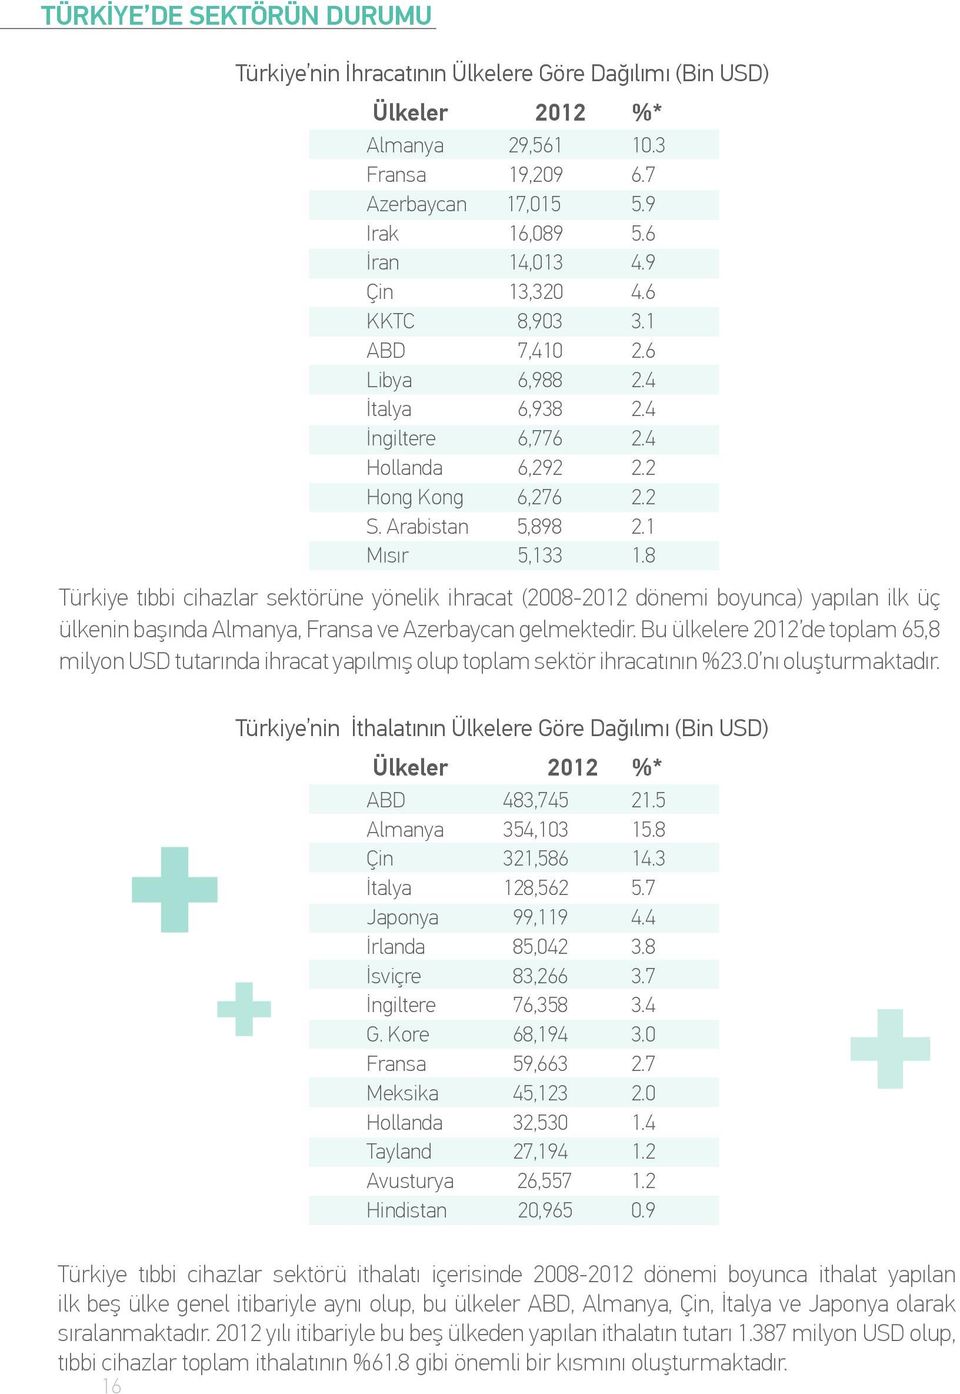 8 Türkiye tıbbi cihazlar sektörüne yönelik ihracat (2008-2012 dönemi boyunca) yapılan ilk üç ülkenin başında Almanya, Fransa ve Azerbaycan gelmektedir.